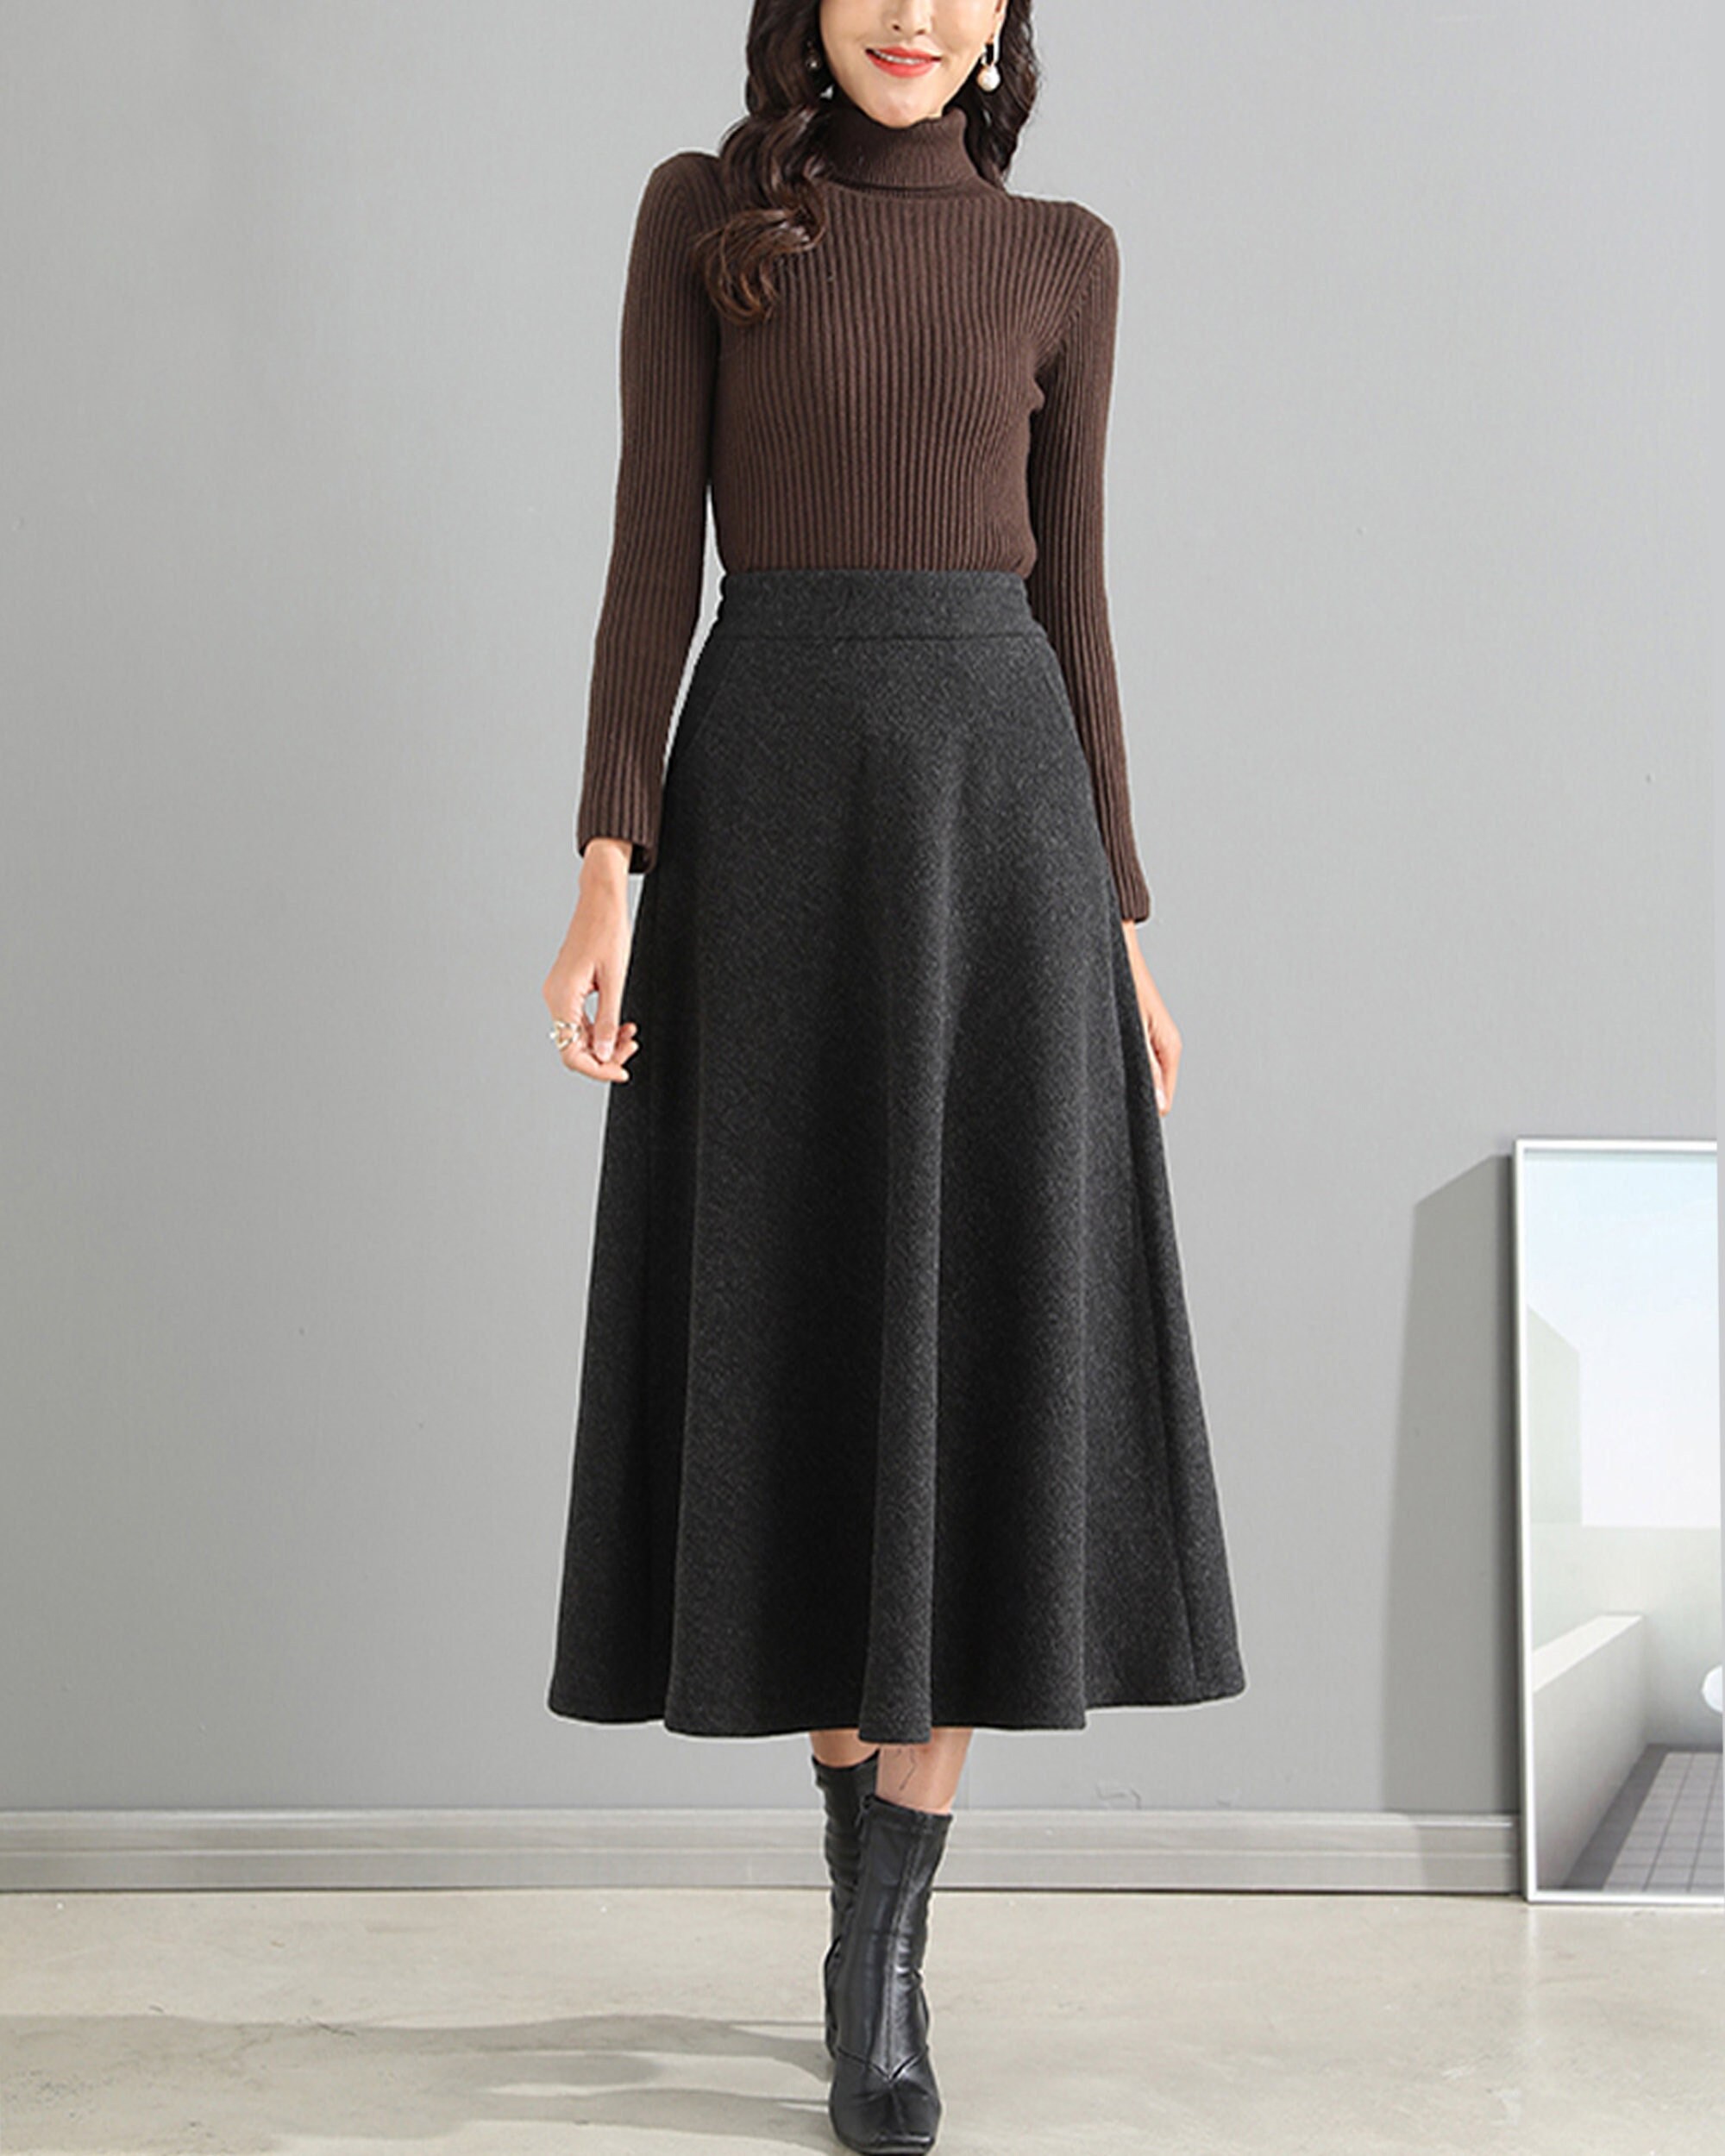 Wool Skirt/midi Skirt/winter Skirt/a-line Skirt/pleated - Etsy